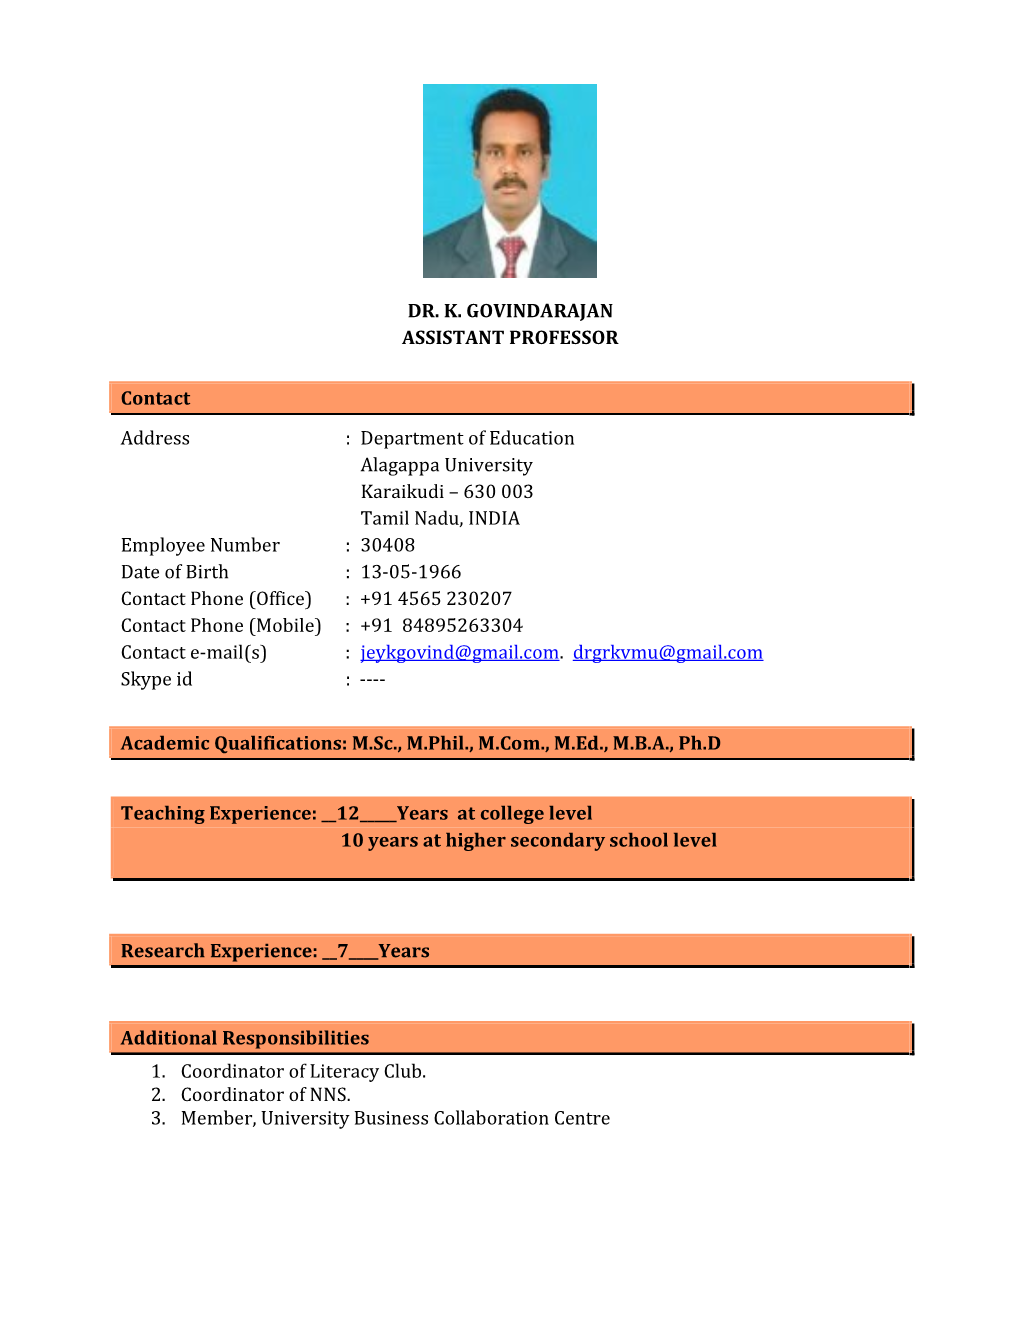 Dr. K. Govindarajan Assistant Professor